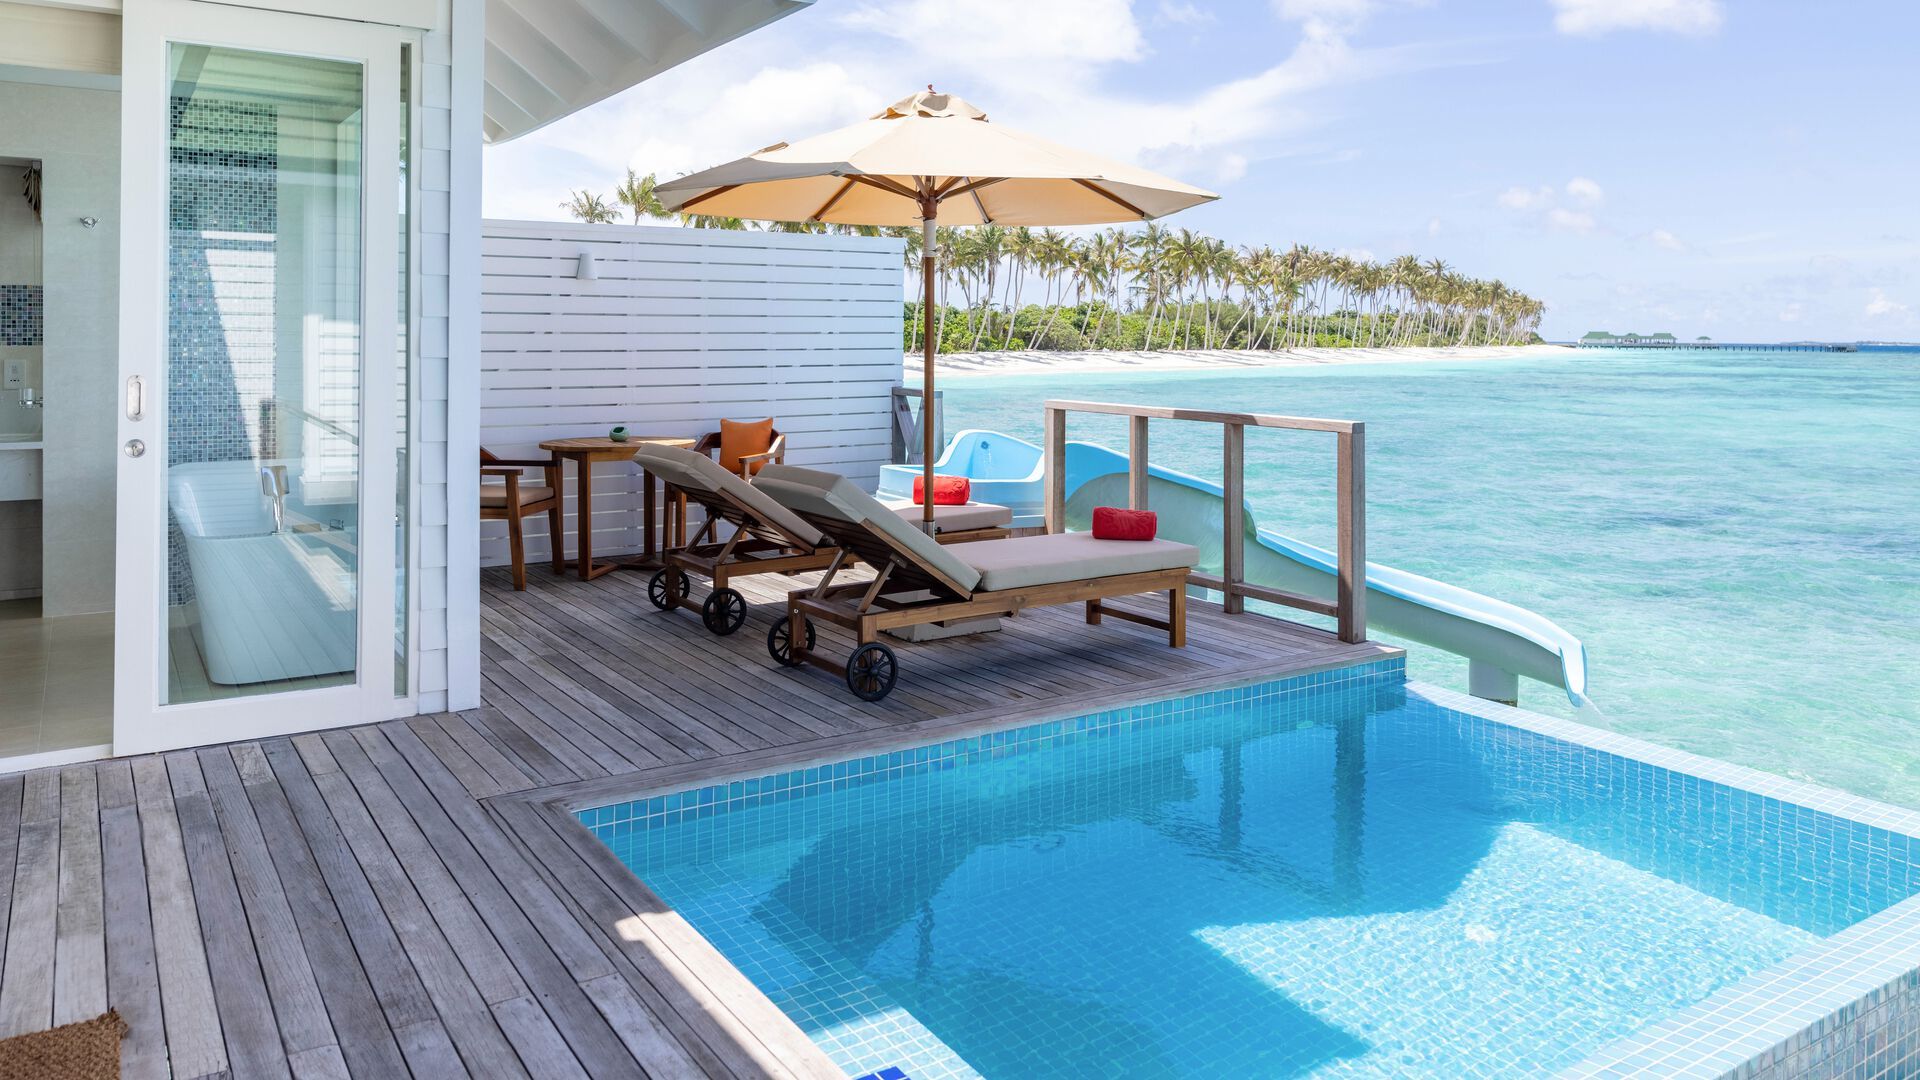 Maldives - Hotel Siyam World Maldives 4*